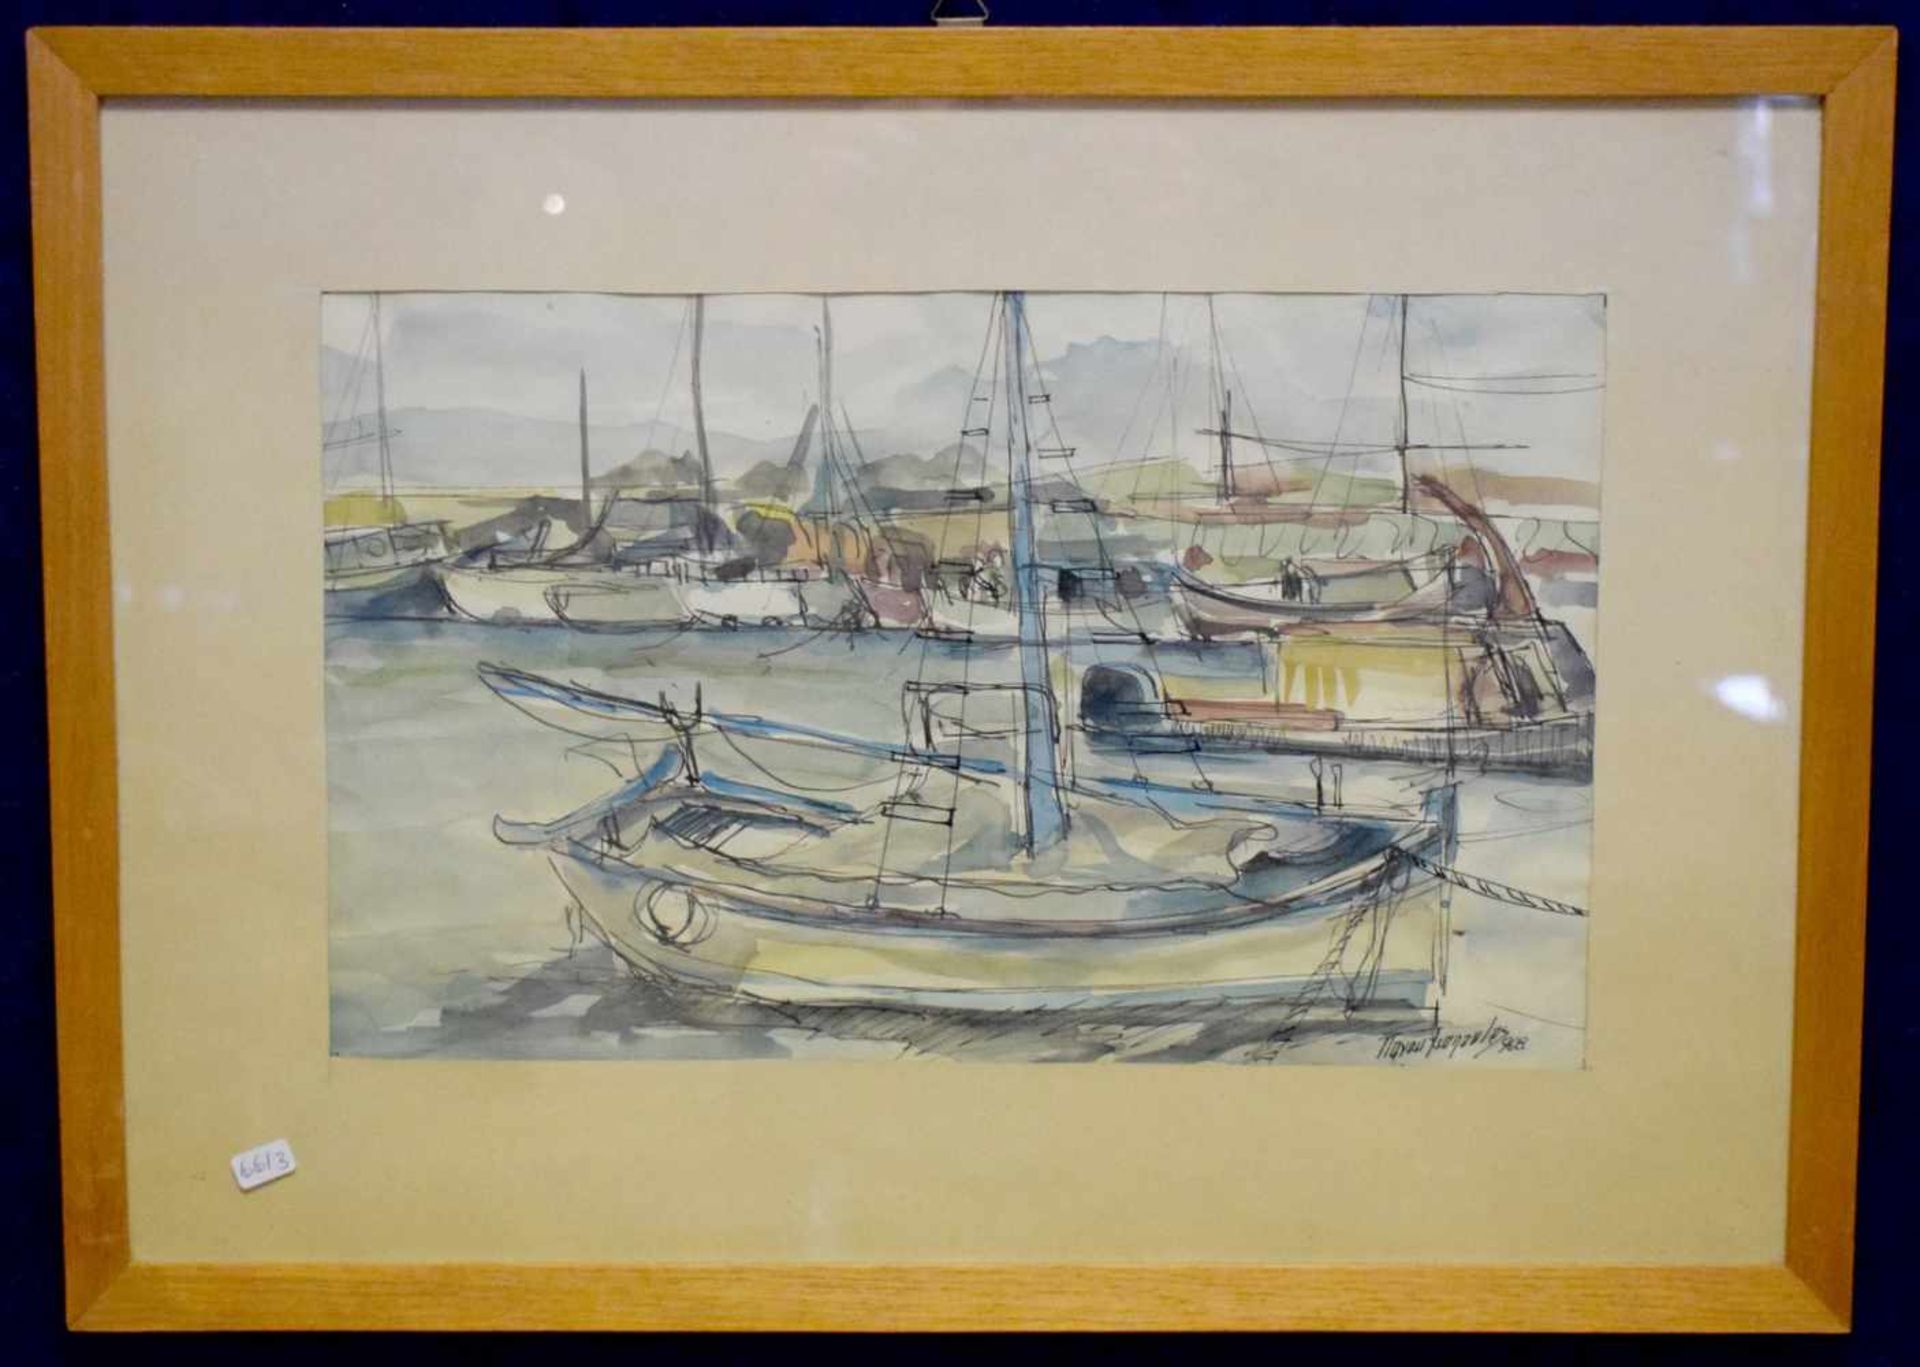 Aquarell/Tuschzeichnung Segelboote im Hafen, u.r.sign. und dat. 1968, Blattgröße 23 X 36 cm, im